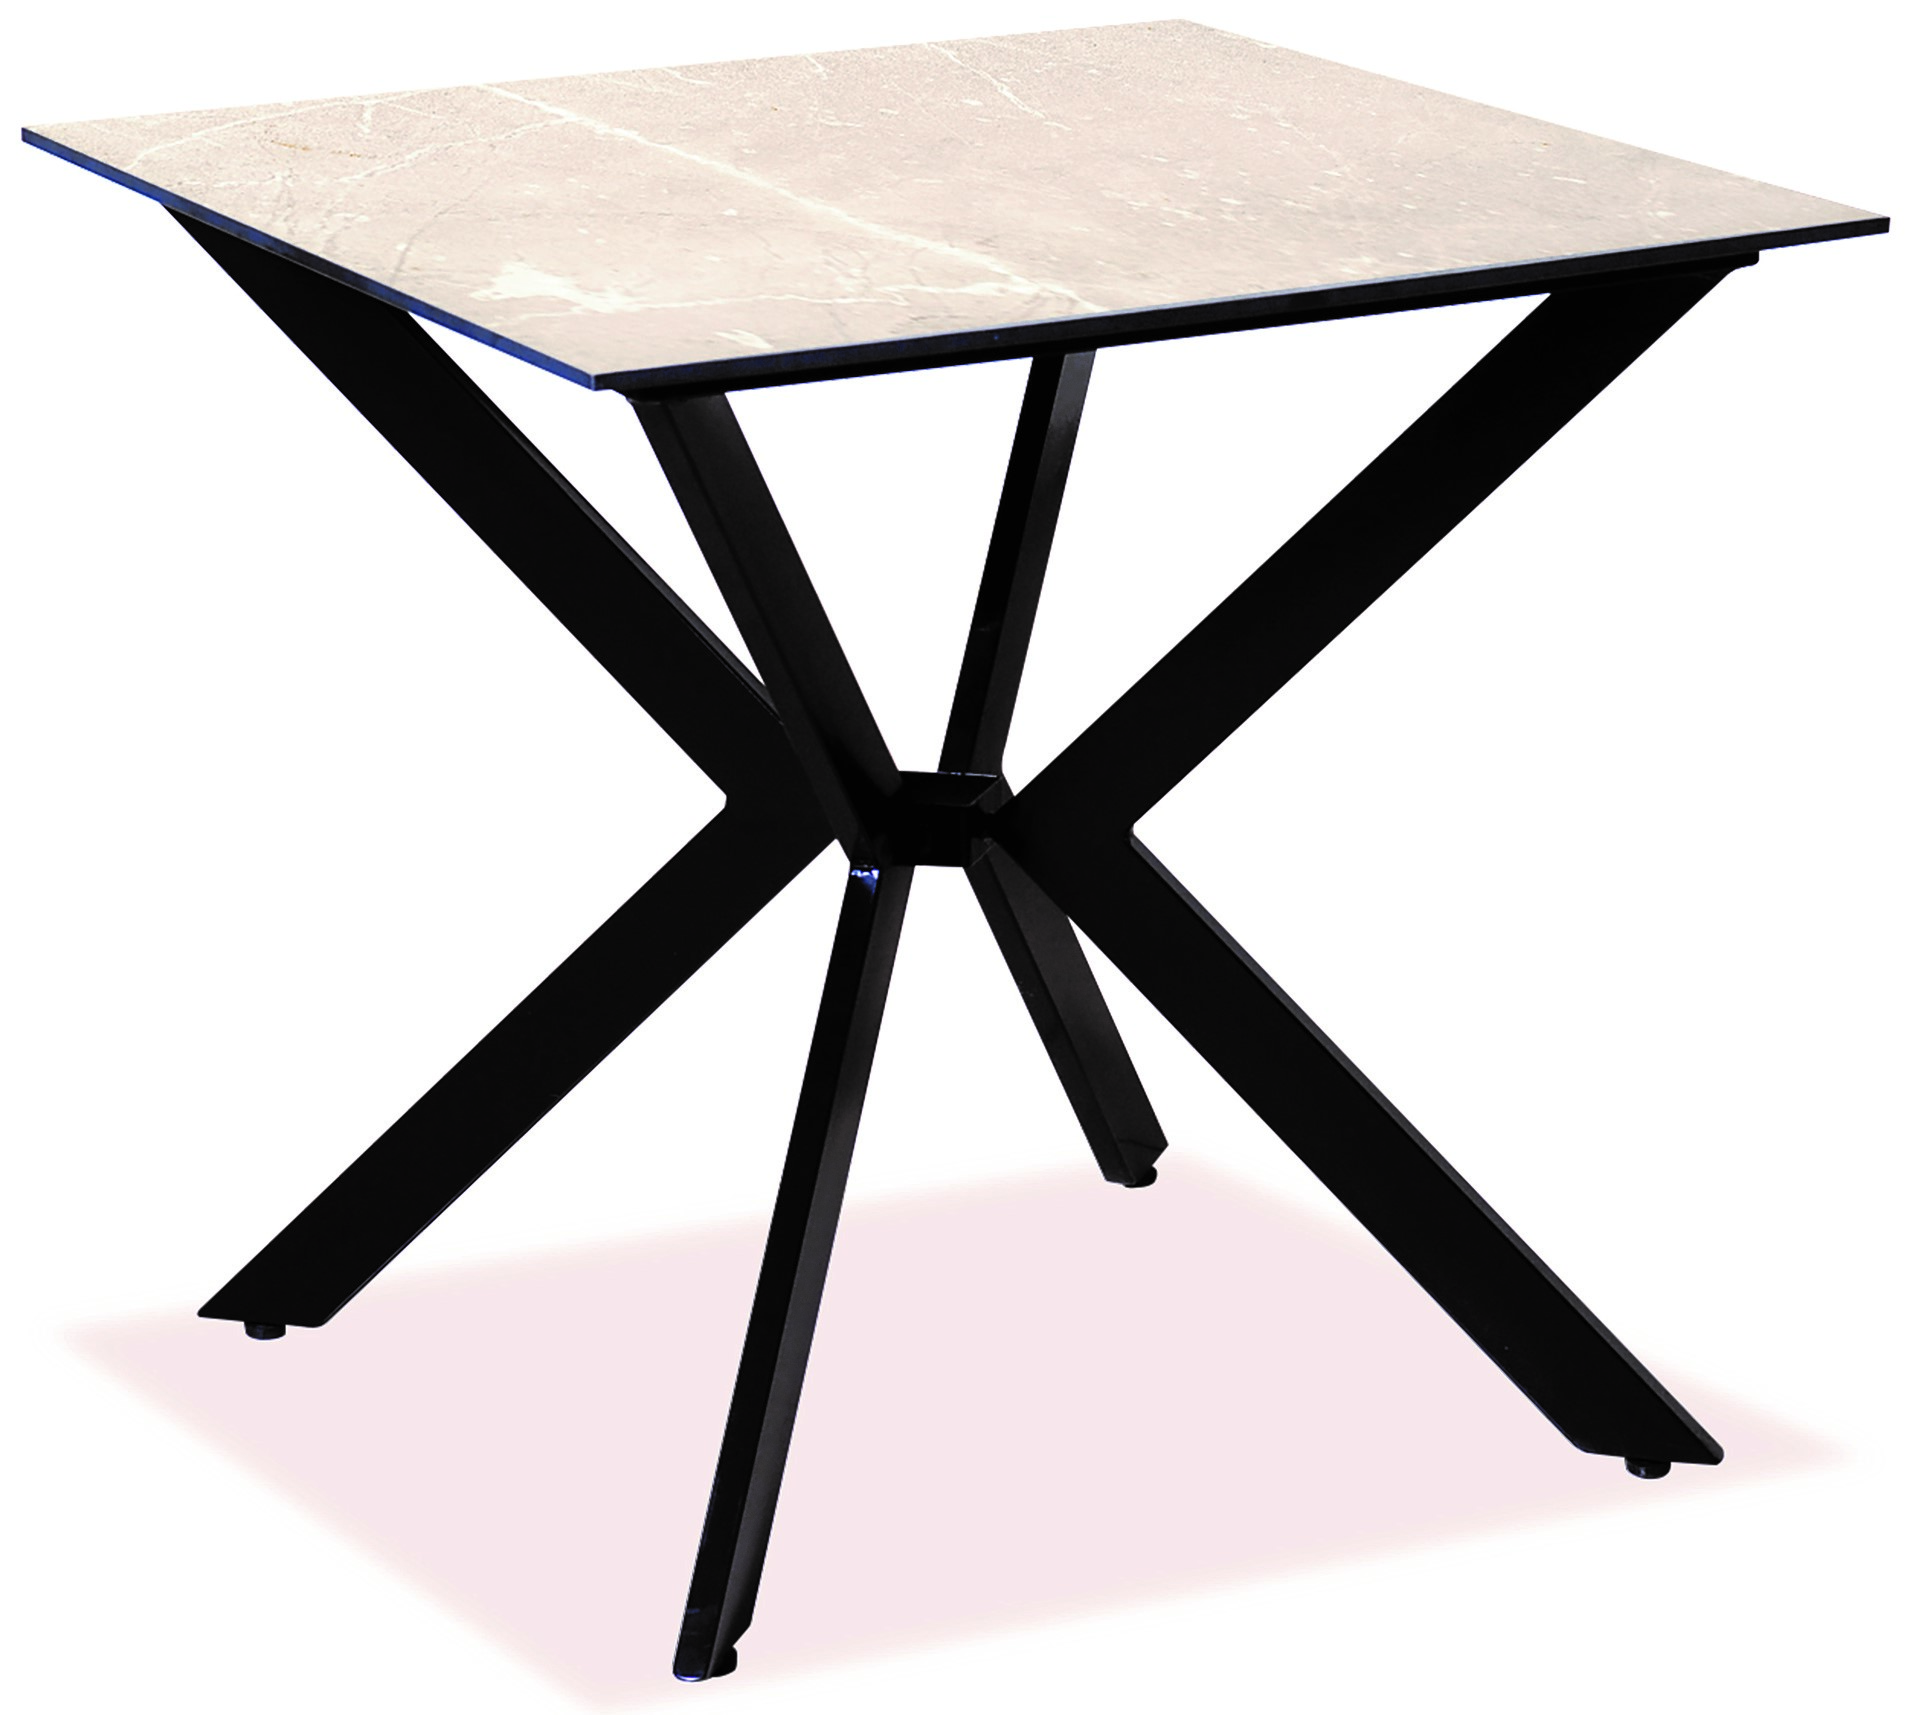 Τετράγωνο Τραπέζι Αλουμινίου Με Επιφάνεια Compact Hpl Μπέζ  68 x 68 x 75(h)cm